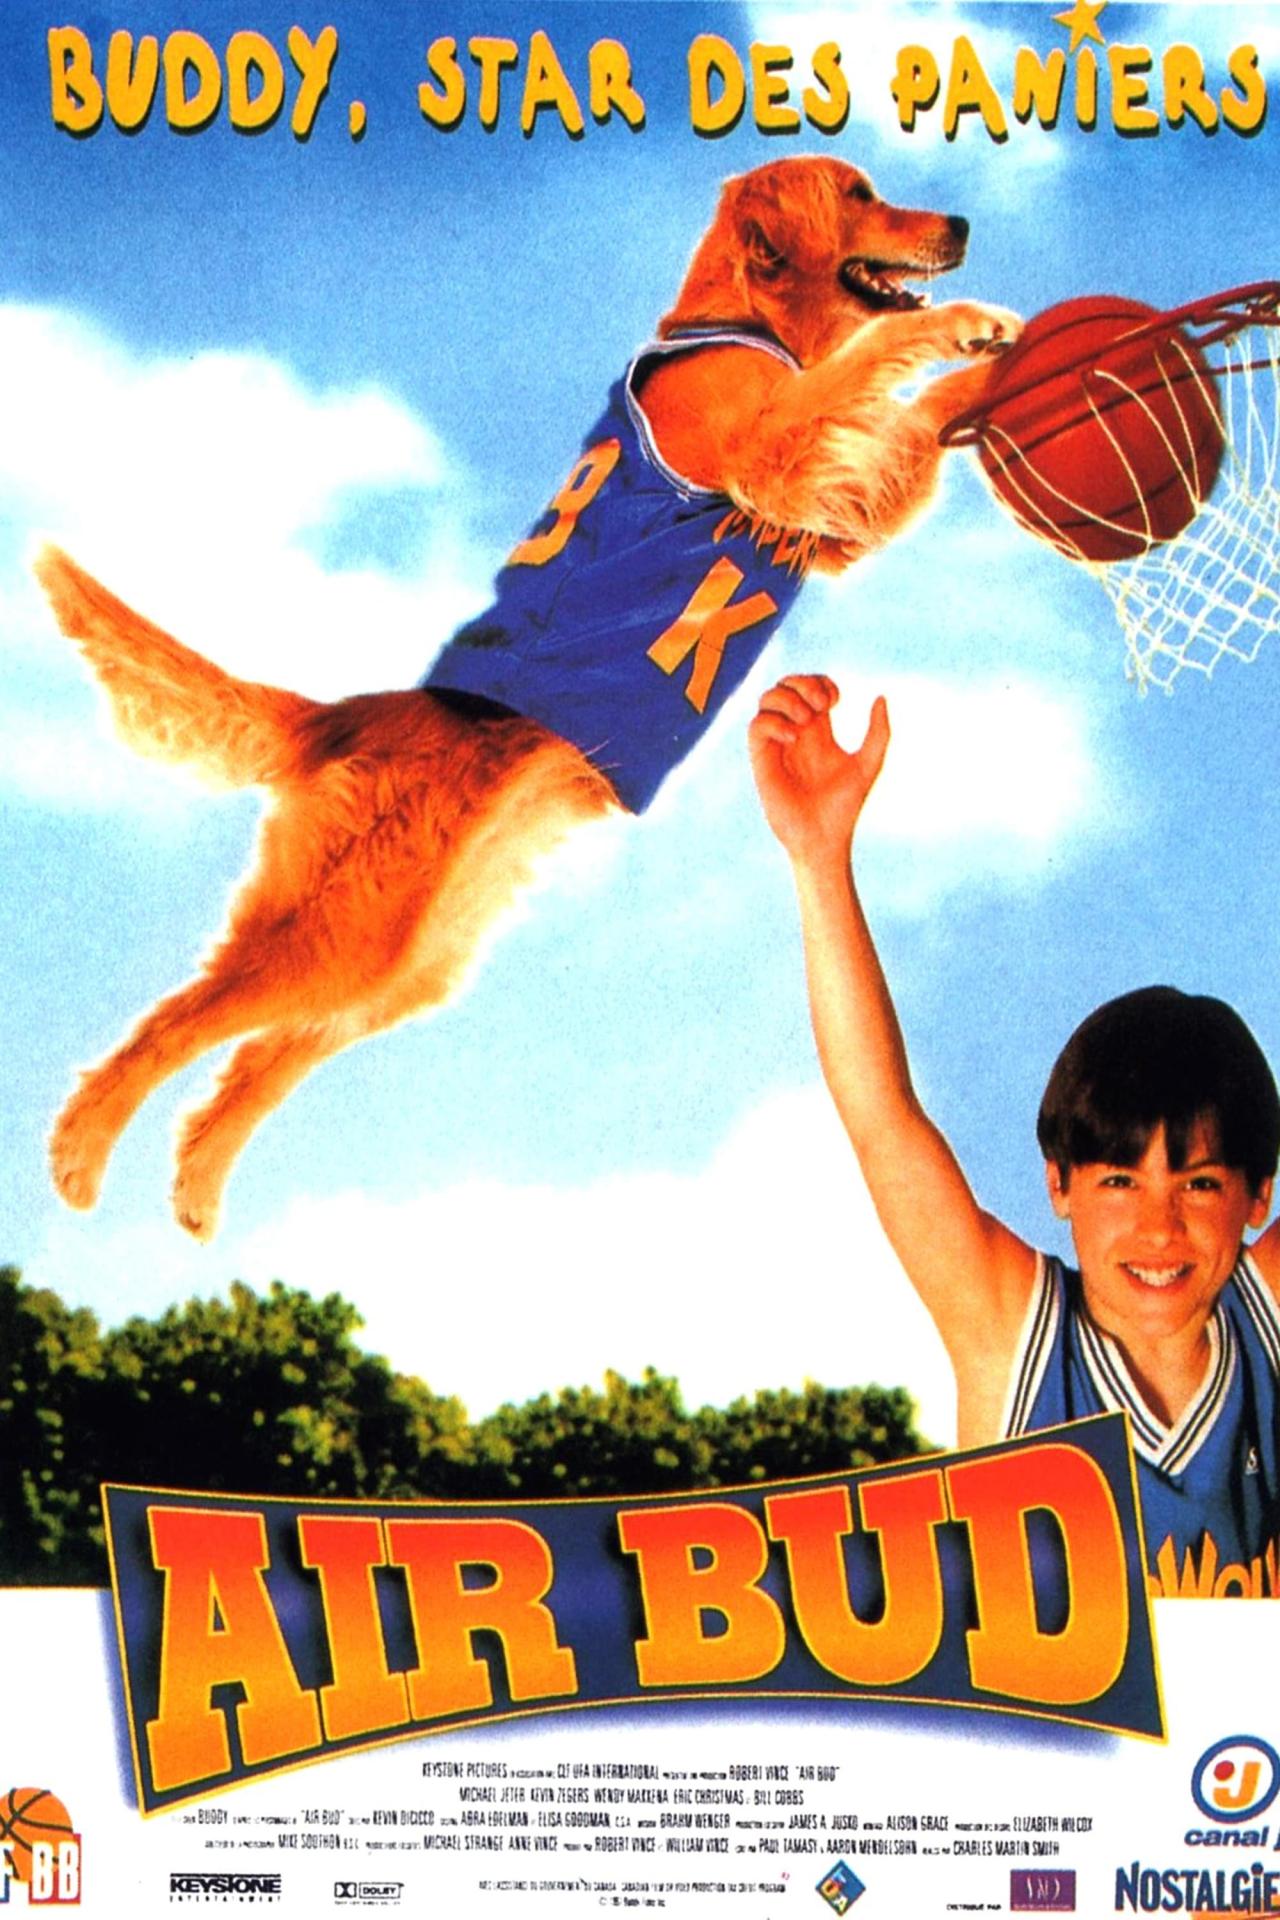 Air Bud : Buddy star des paniers est-il disponible sur Netflix ou autre ?